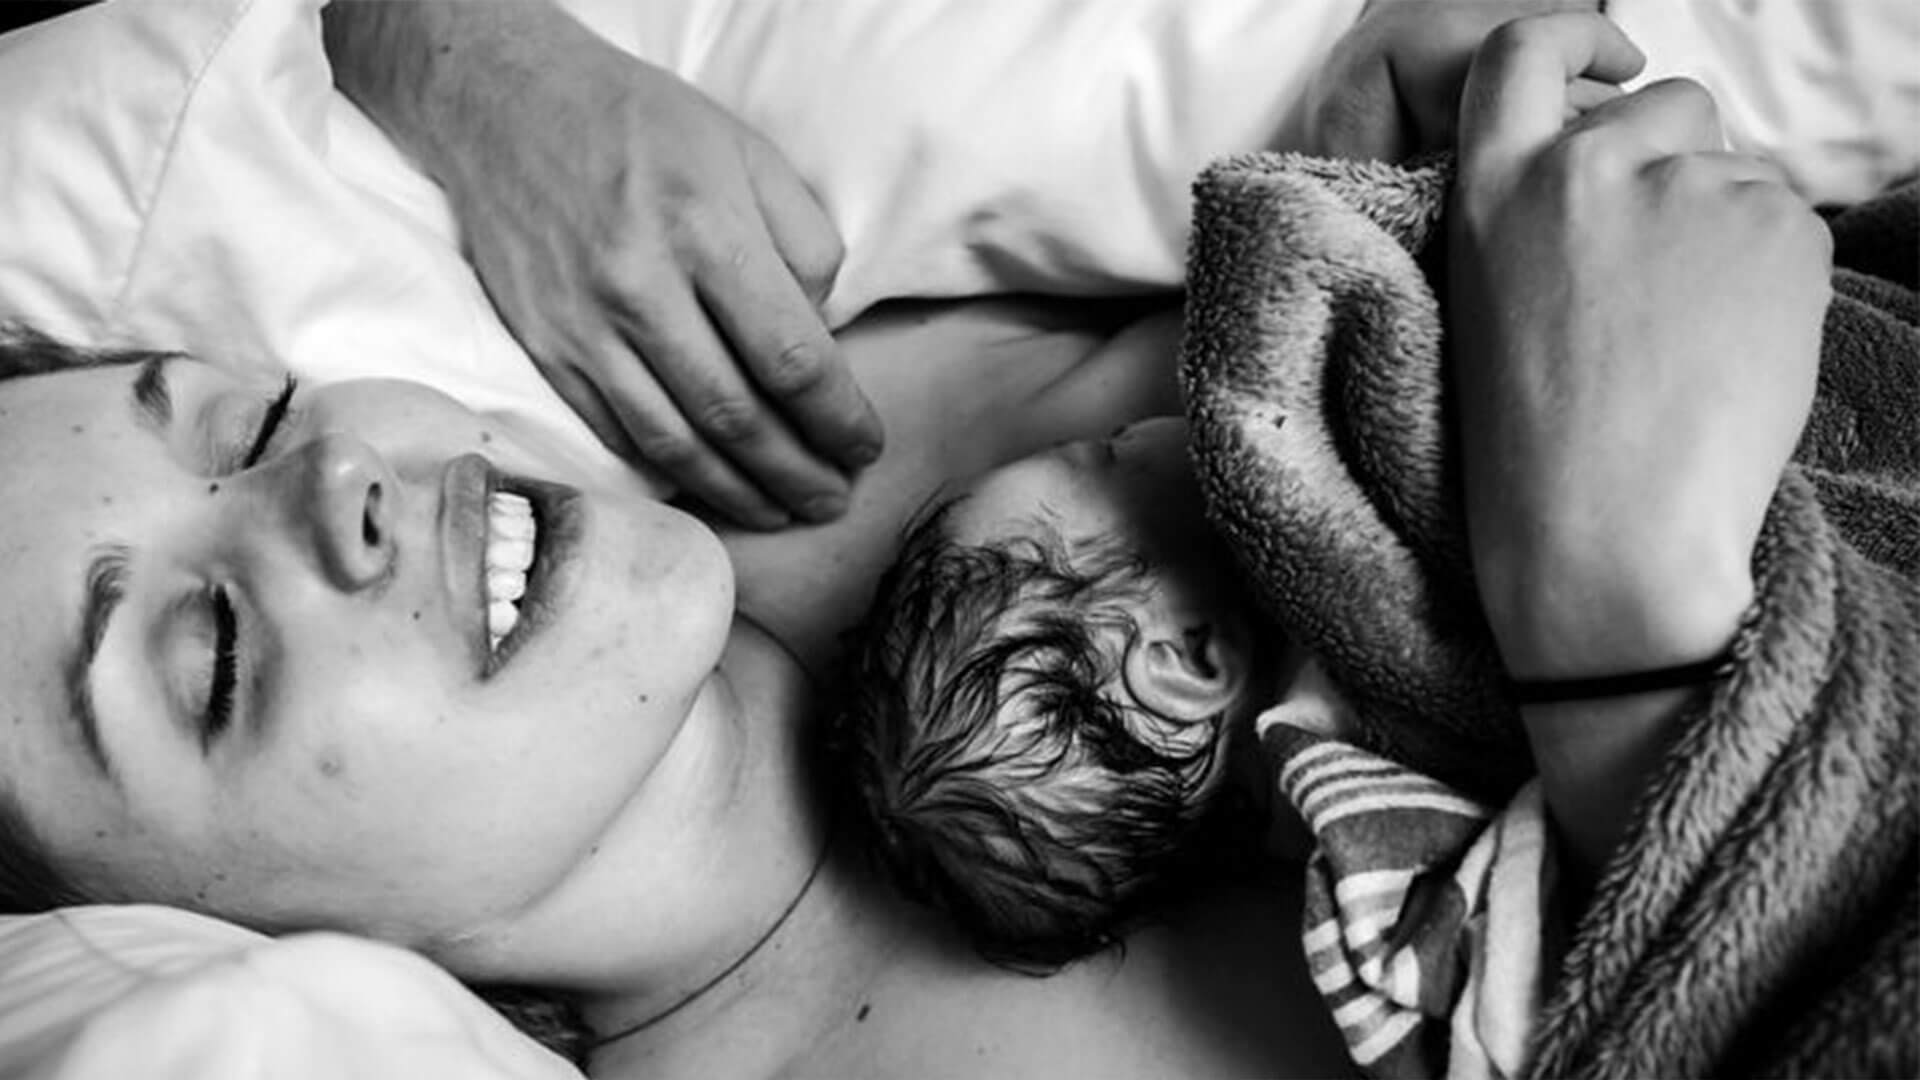 Foto em preto e branco mostra mãe e bebê deitados. O recém-nascido está no colo da mãe e ela sorri.